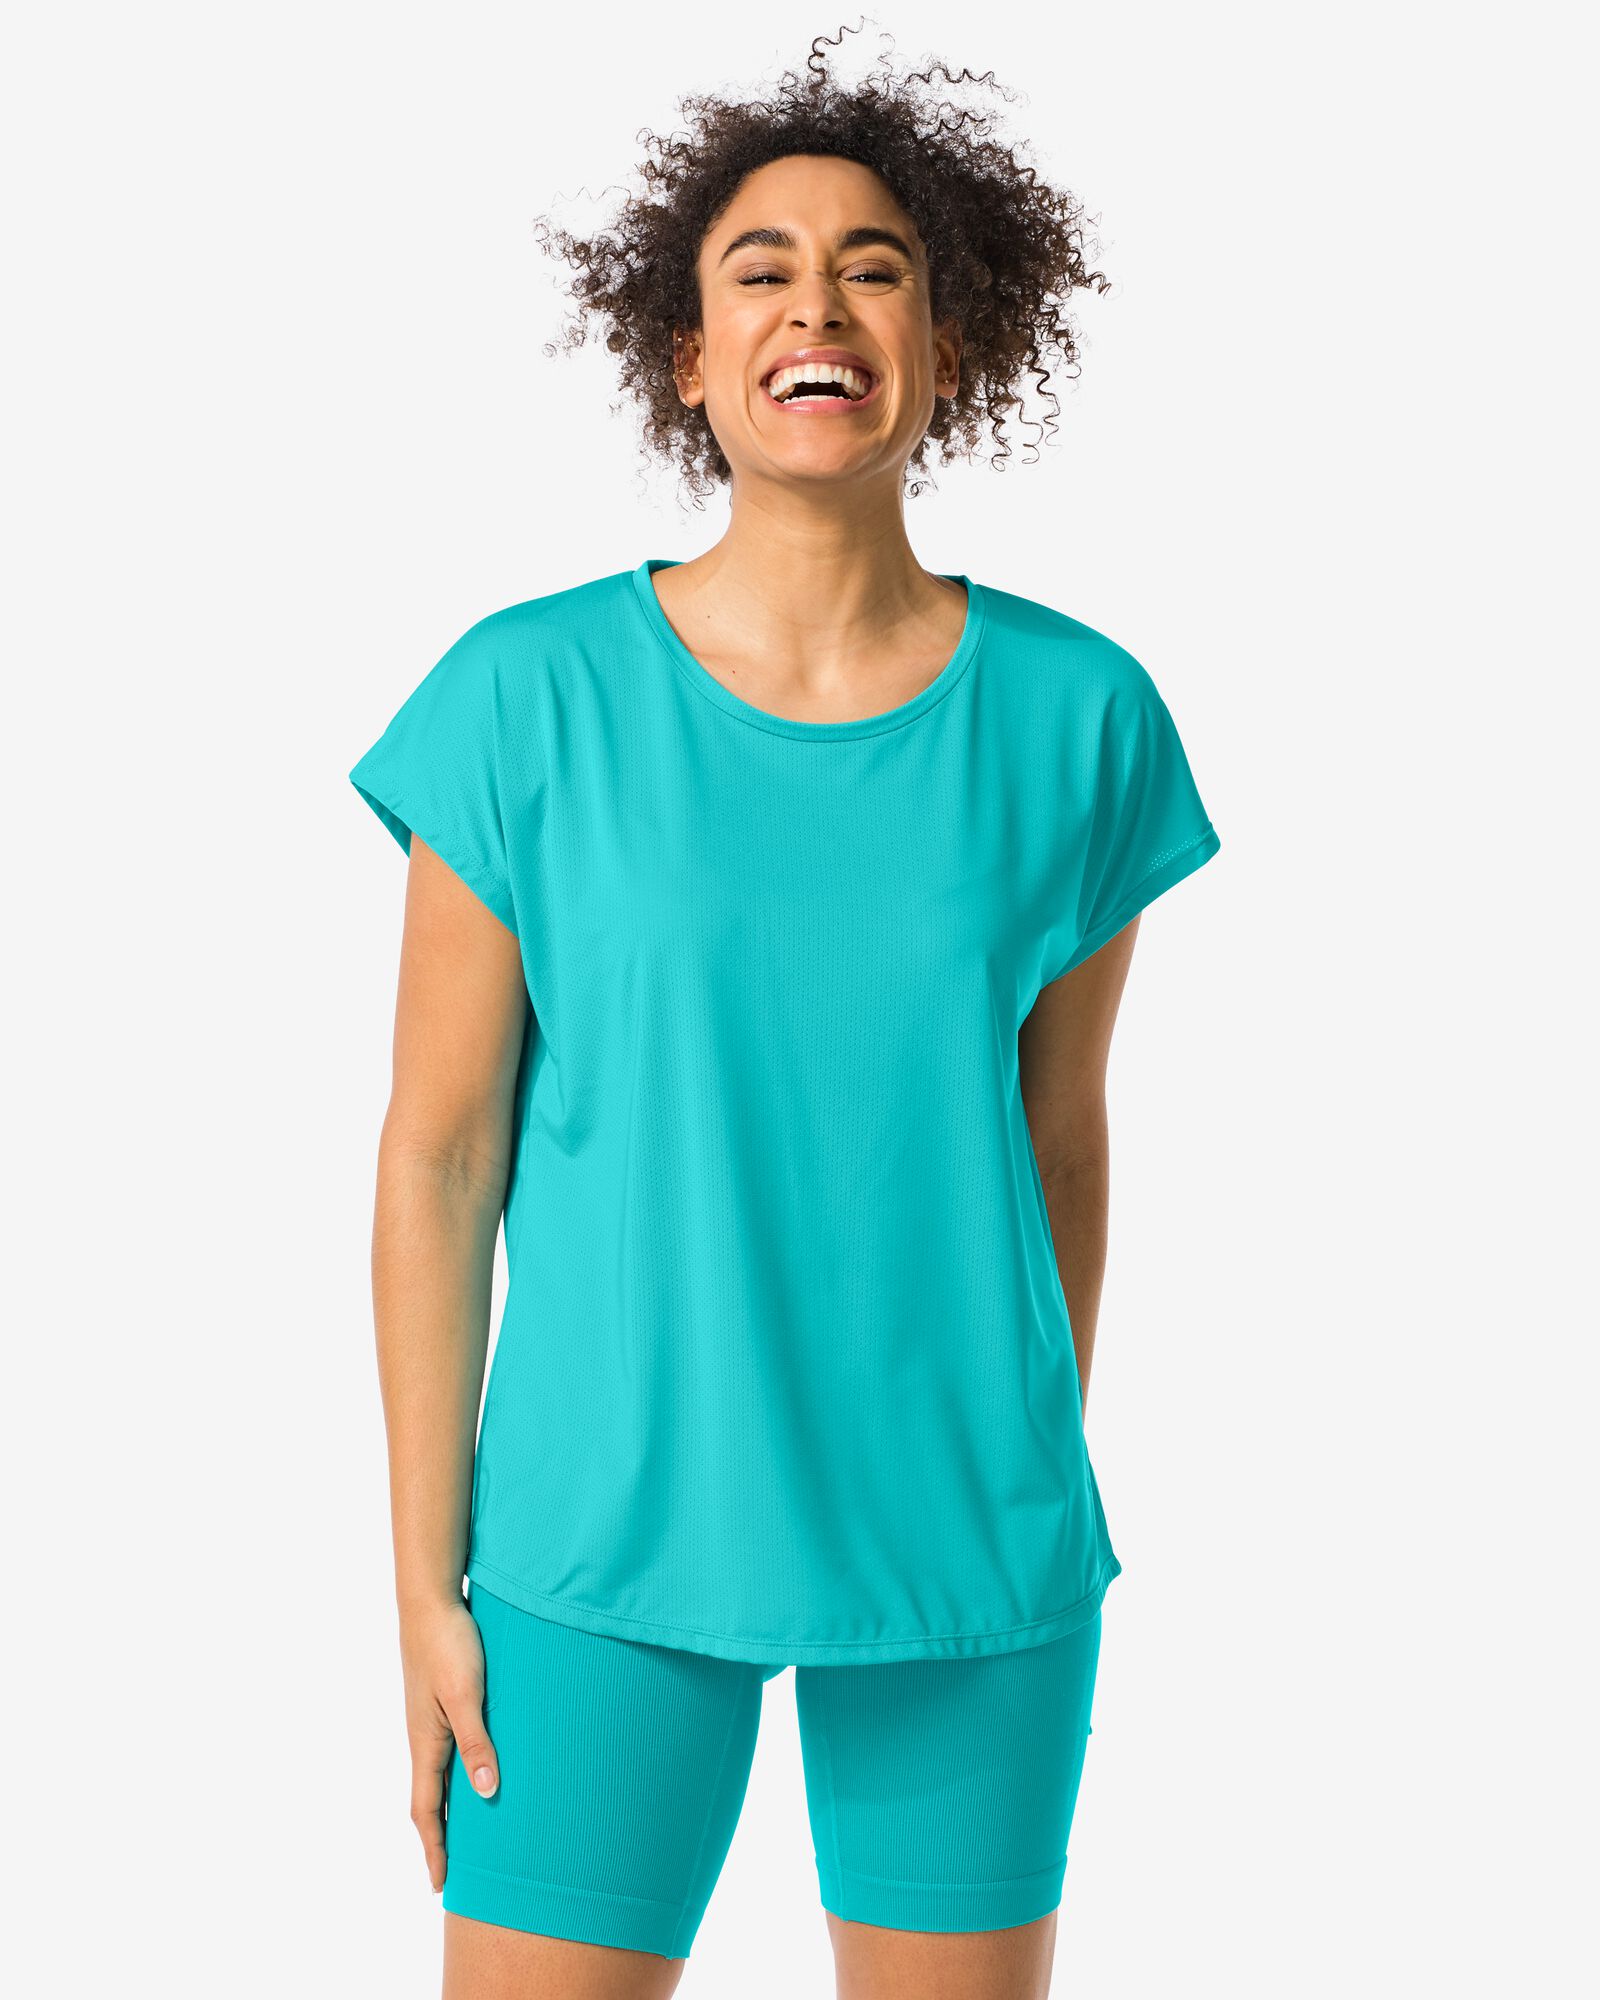 Image de HEMA T-shirt De Sport Femme Turquoise (turquoise)